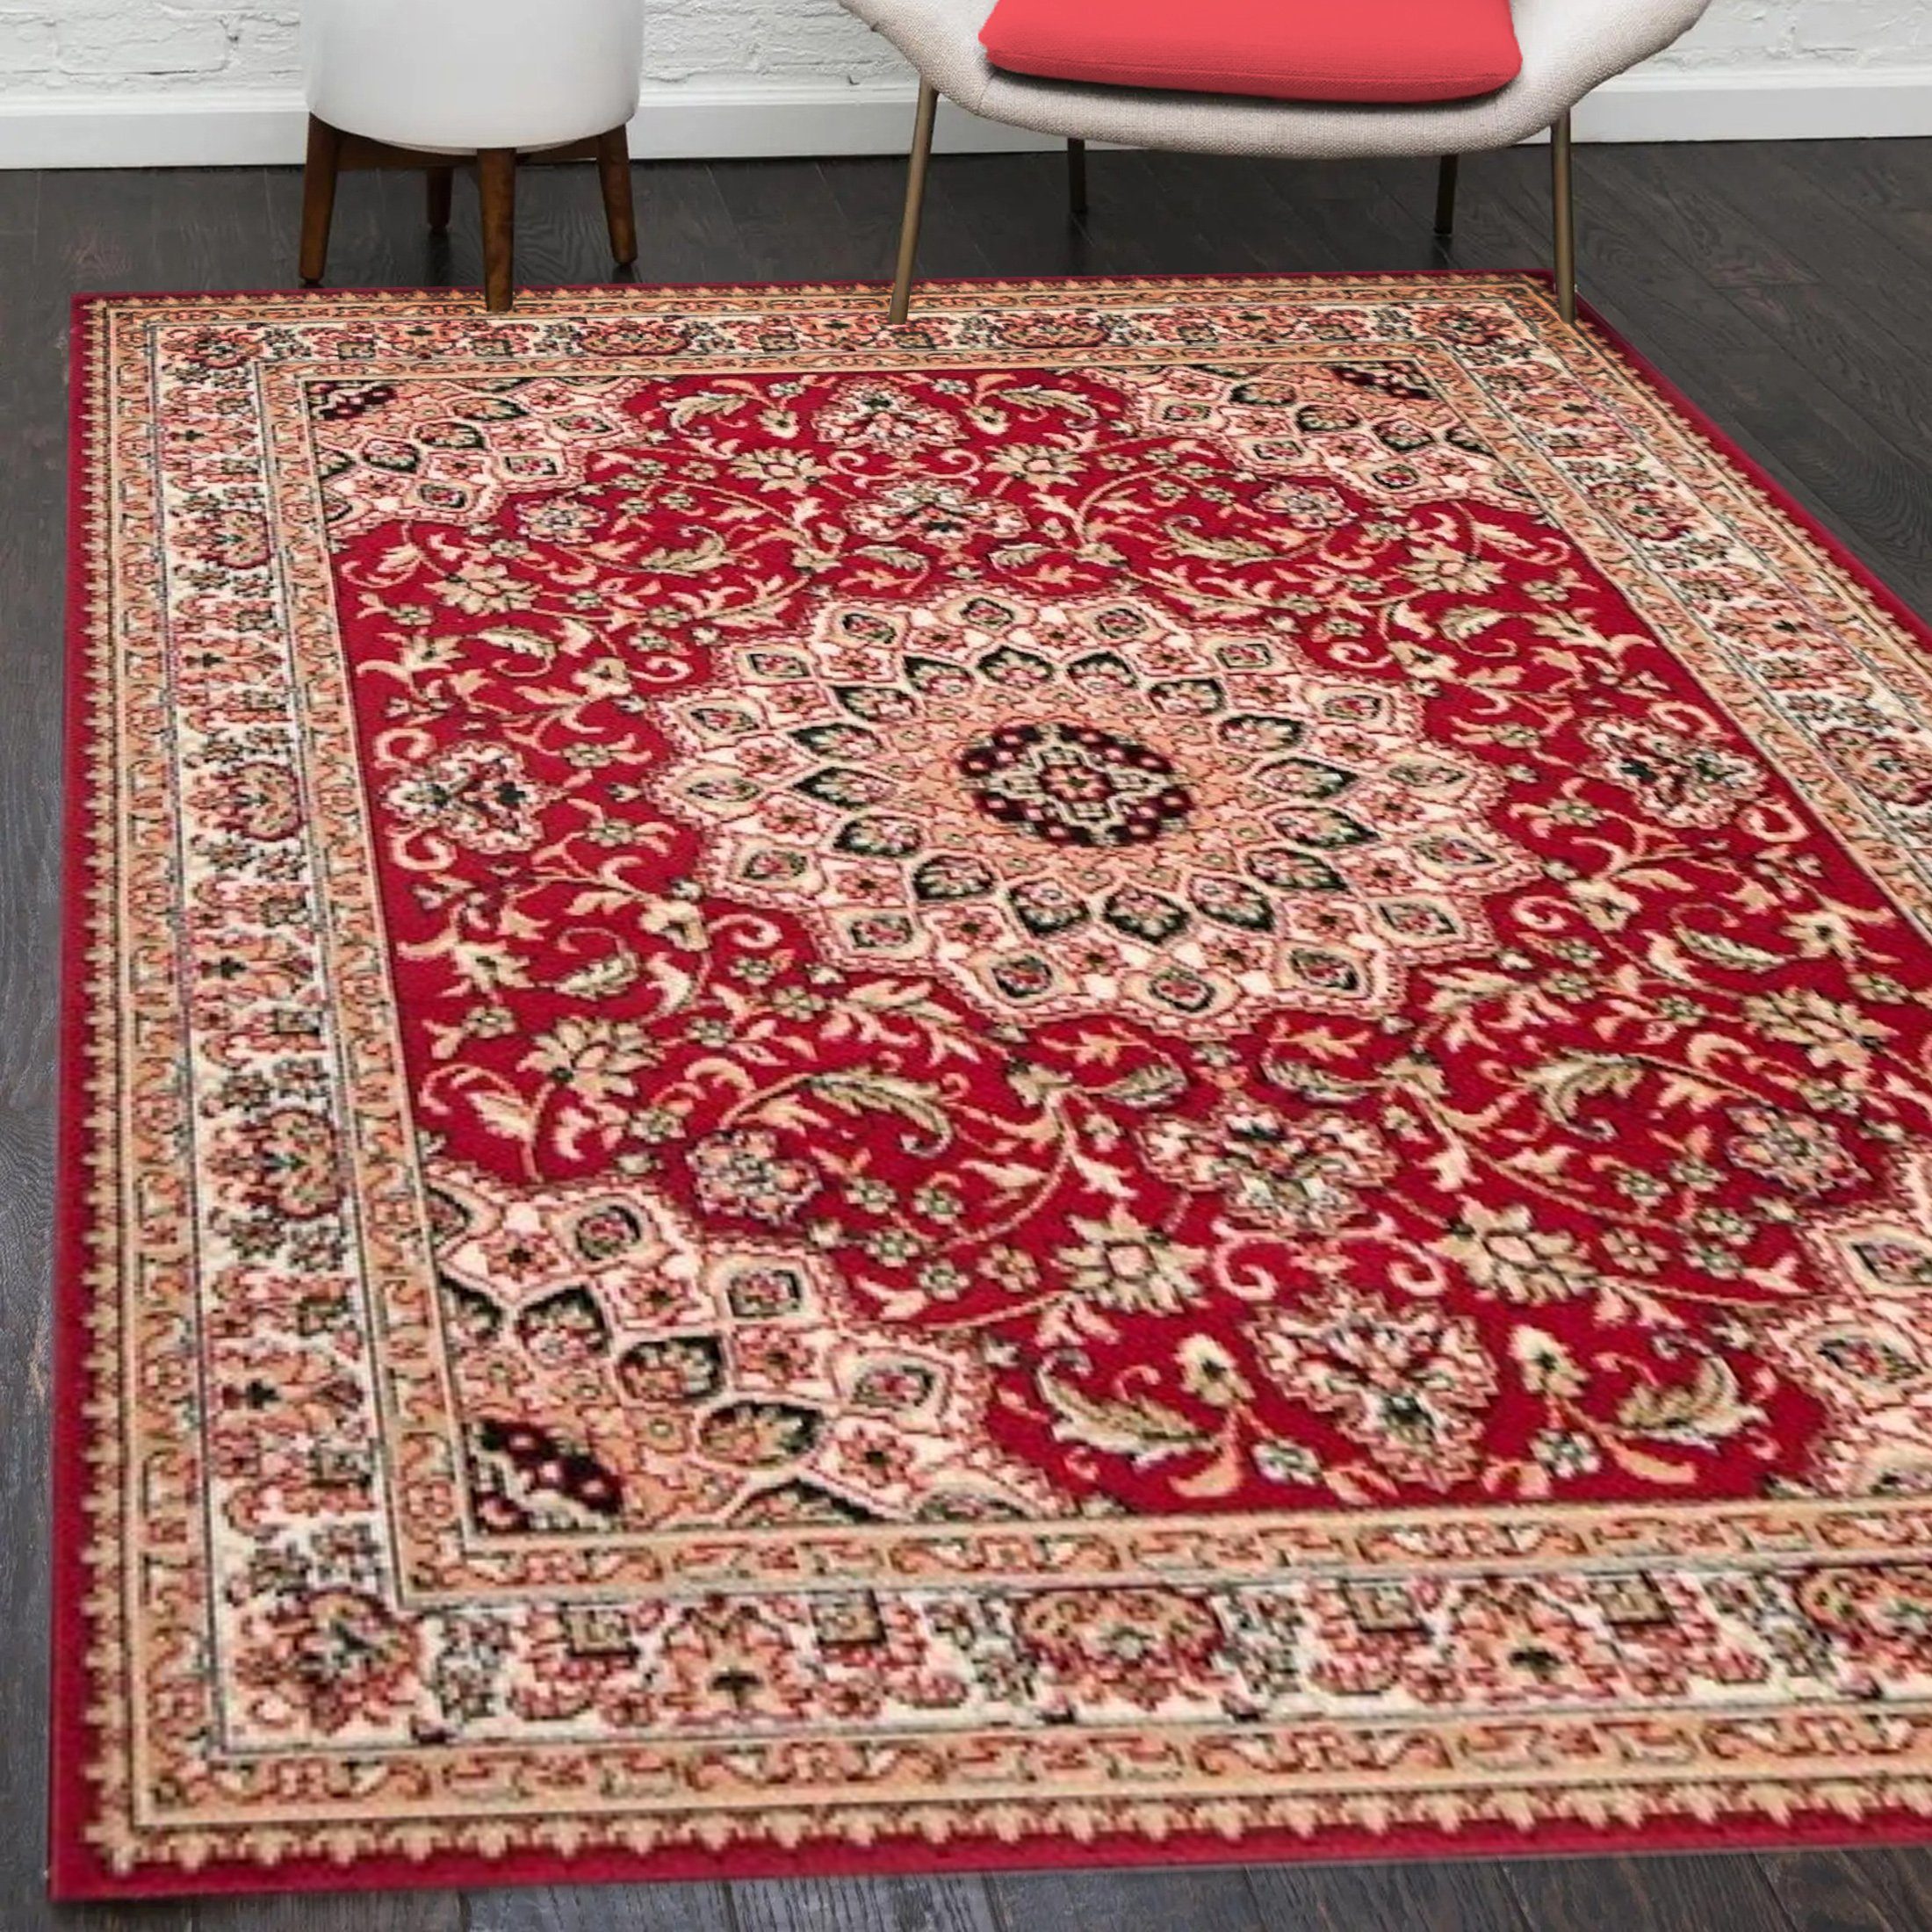 Orientteppich Orientalisch Vintage Teppich Kurzflor Wohnzimmerteppich Rot, Mazovia, 60 x 100 cm, Fußbodenheizung, Всеrgiker geeignet, Farbecht, Pflegeleicht